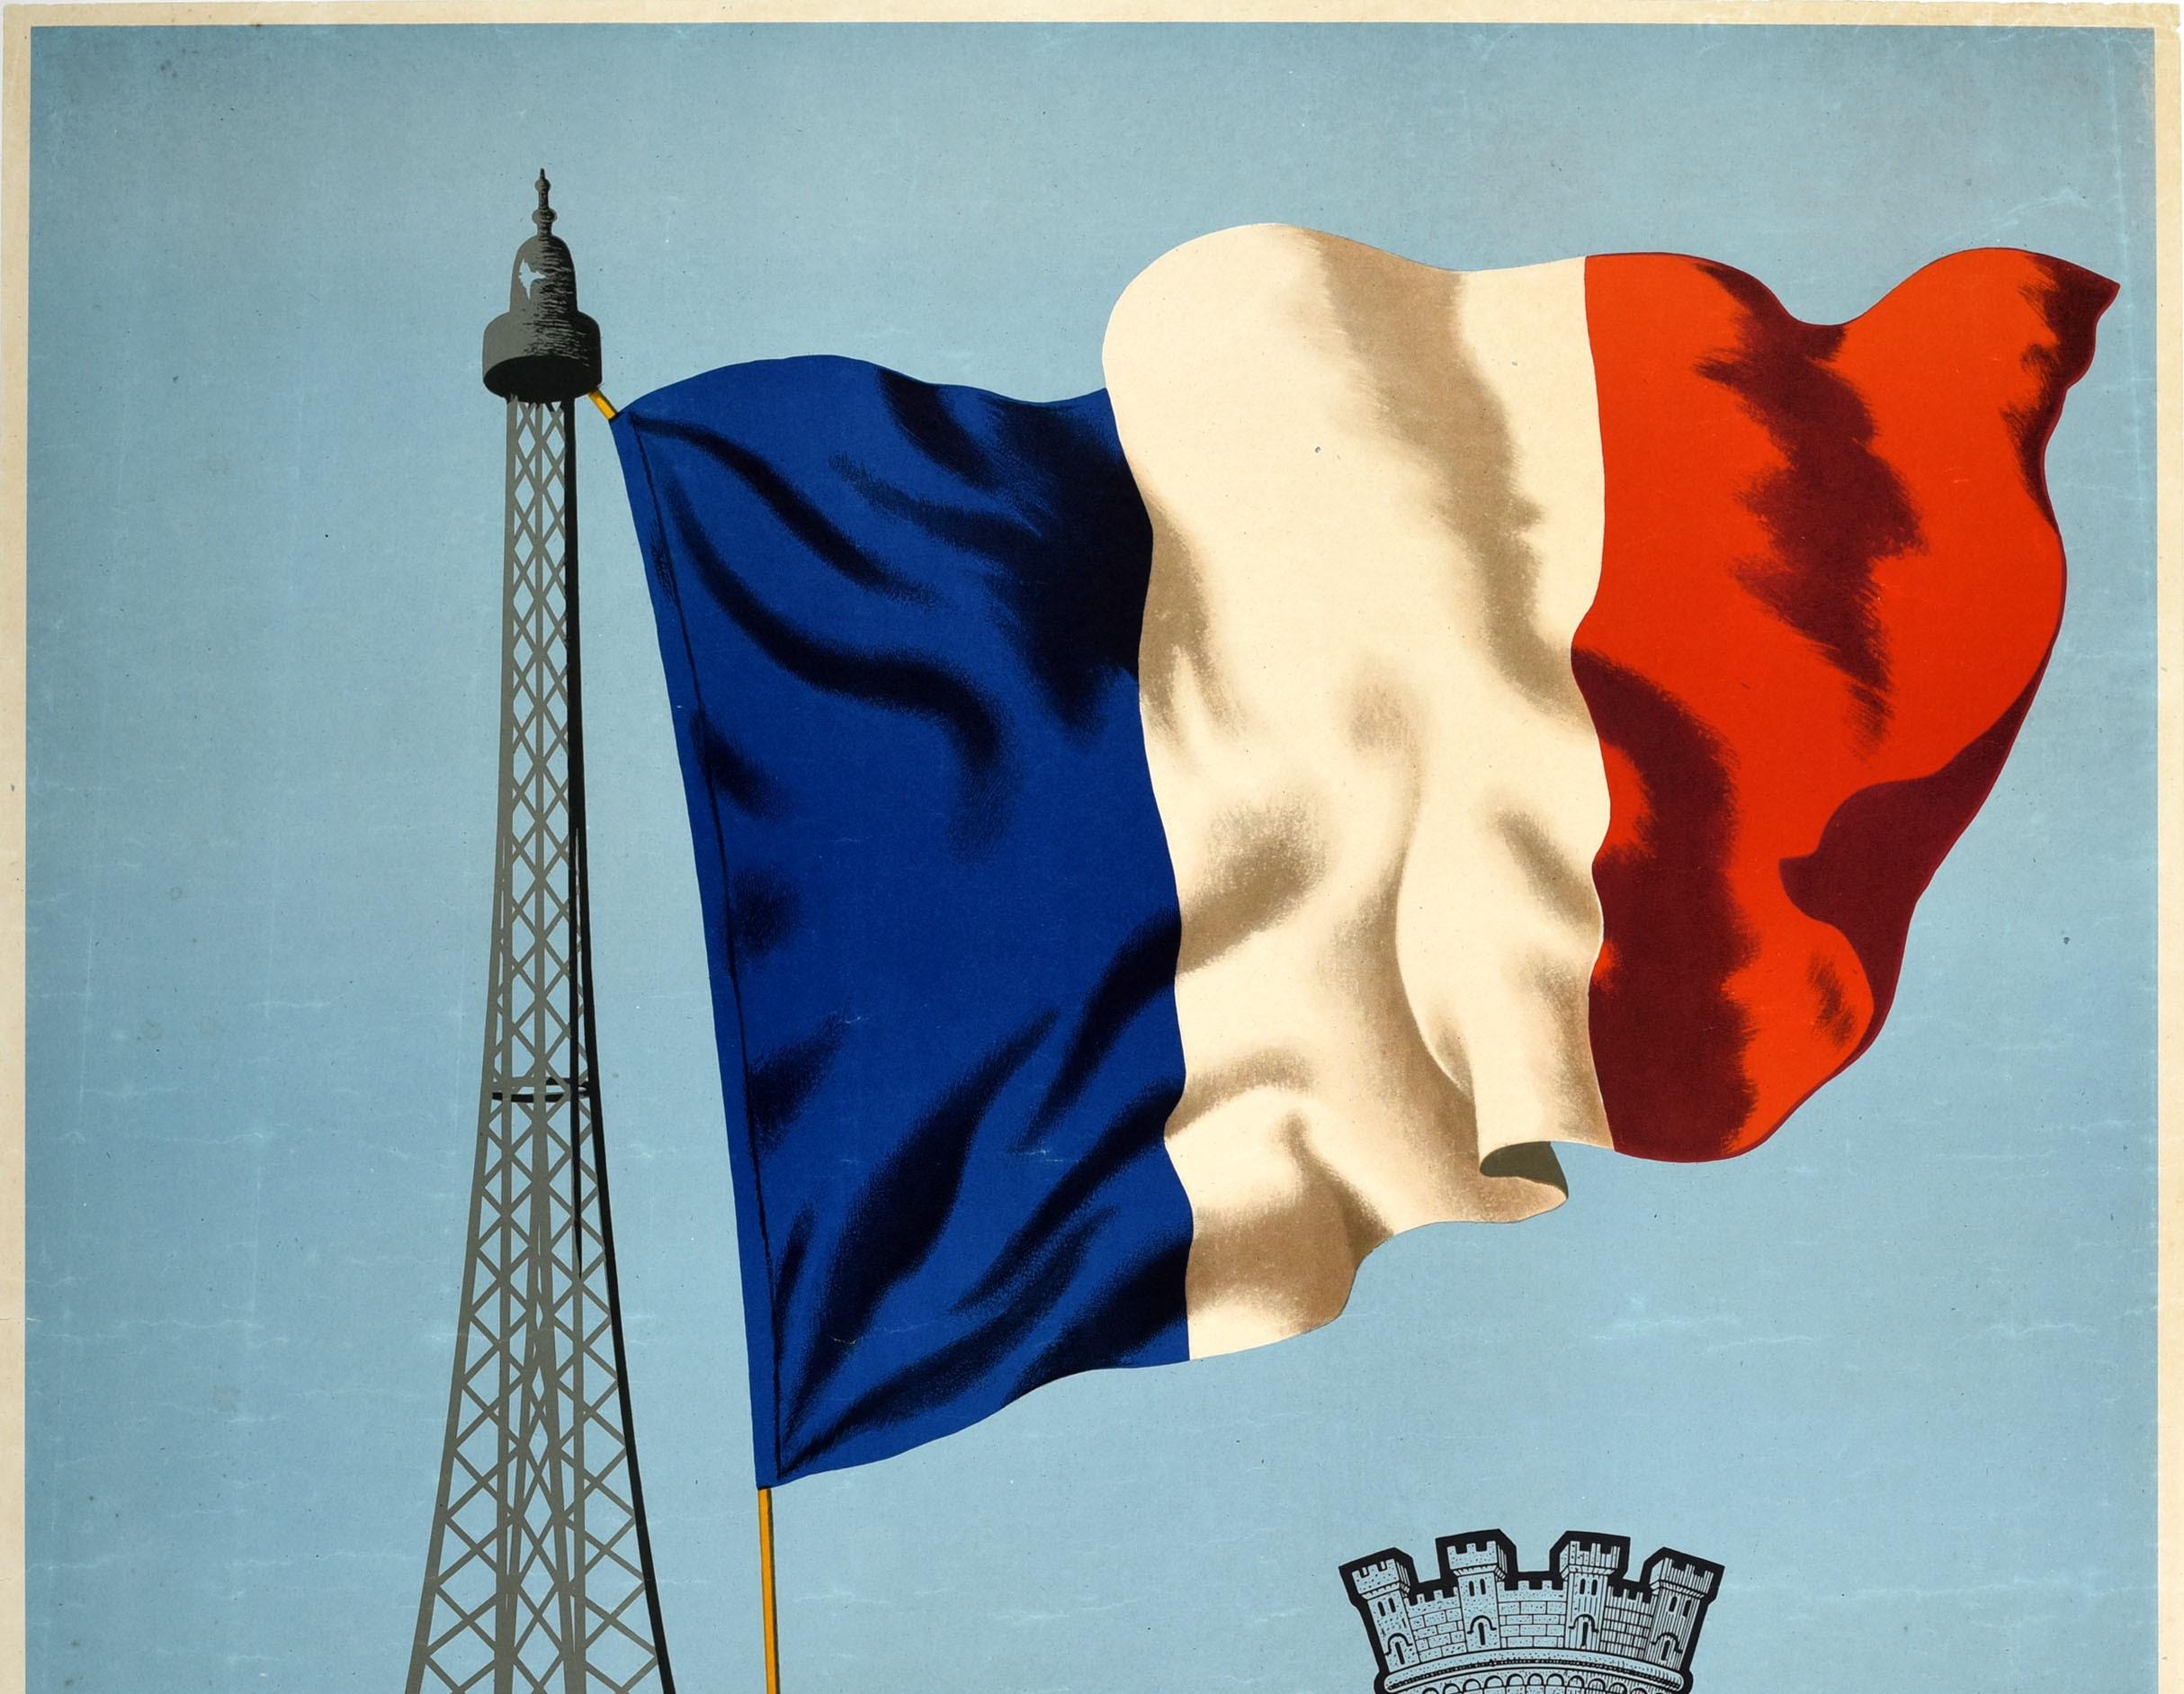 Affiche originale de la libération de la France pendant la Seconde Guerre mondiale, représentant un grand drapeau bleu, blanc et rouge flottant sur le côté de la Tour Eiffel avec le Blason de Paris / armoiries de Paris sur le côté montrant un